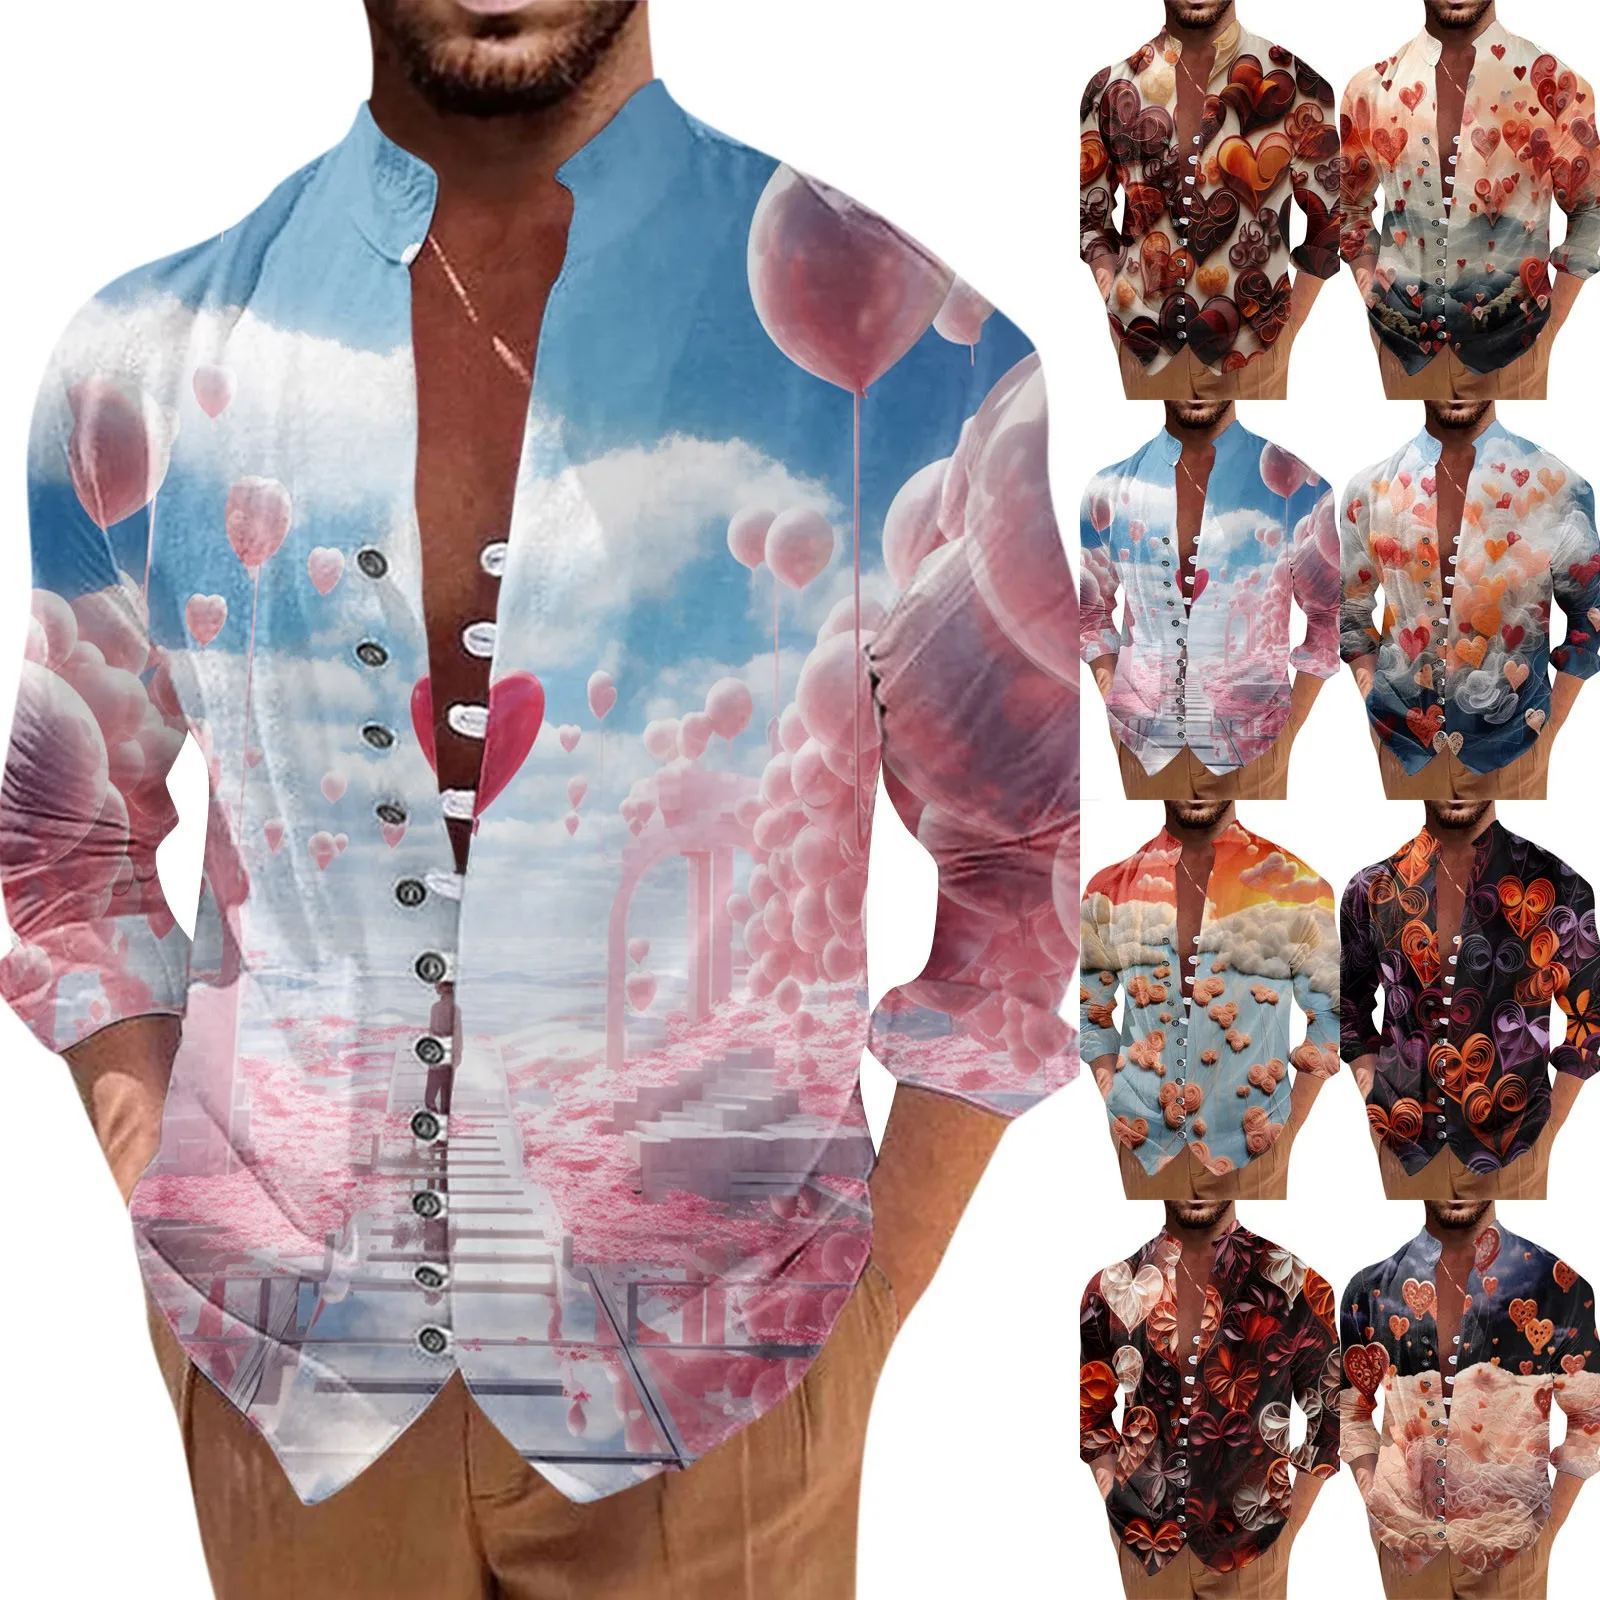 

Мужская Повседневная Свободная рубашка в стиле ретро с рисунком планшетов, модный и модный топ с воротником-стойкой, подчеркивающий индивидуальность